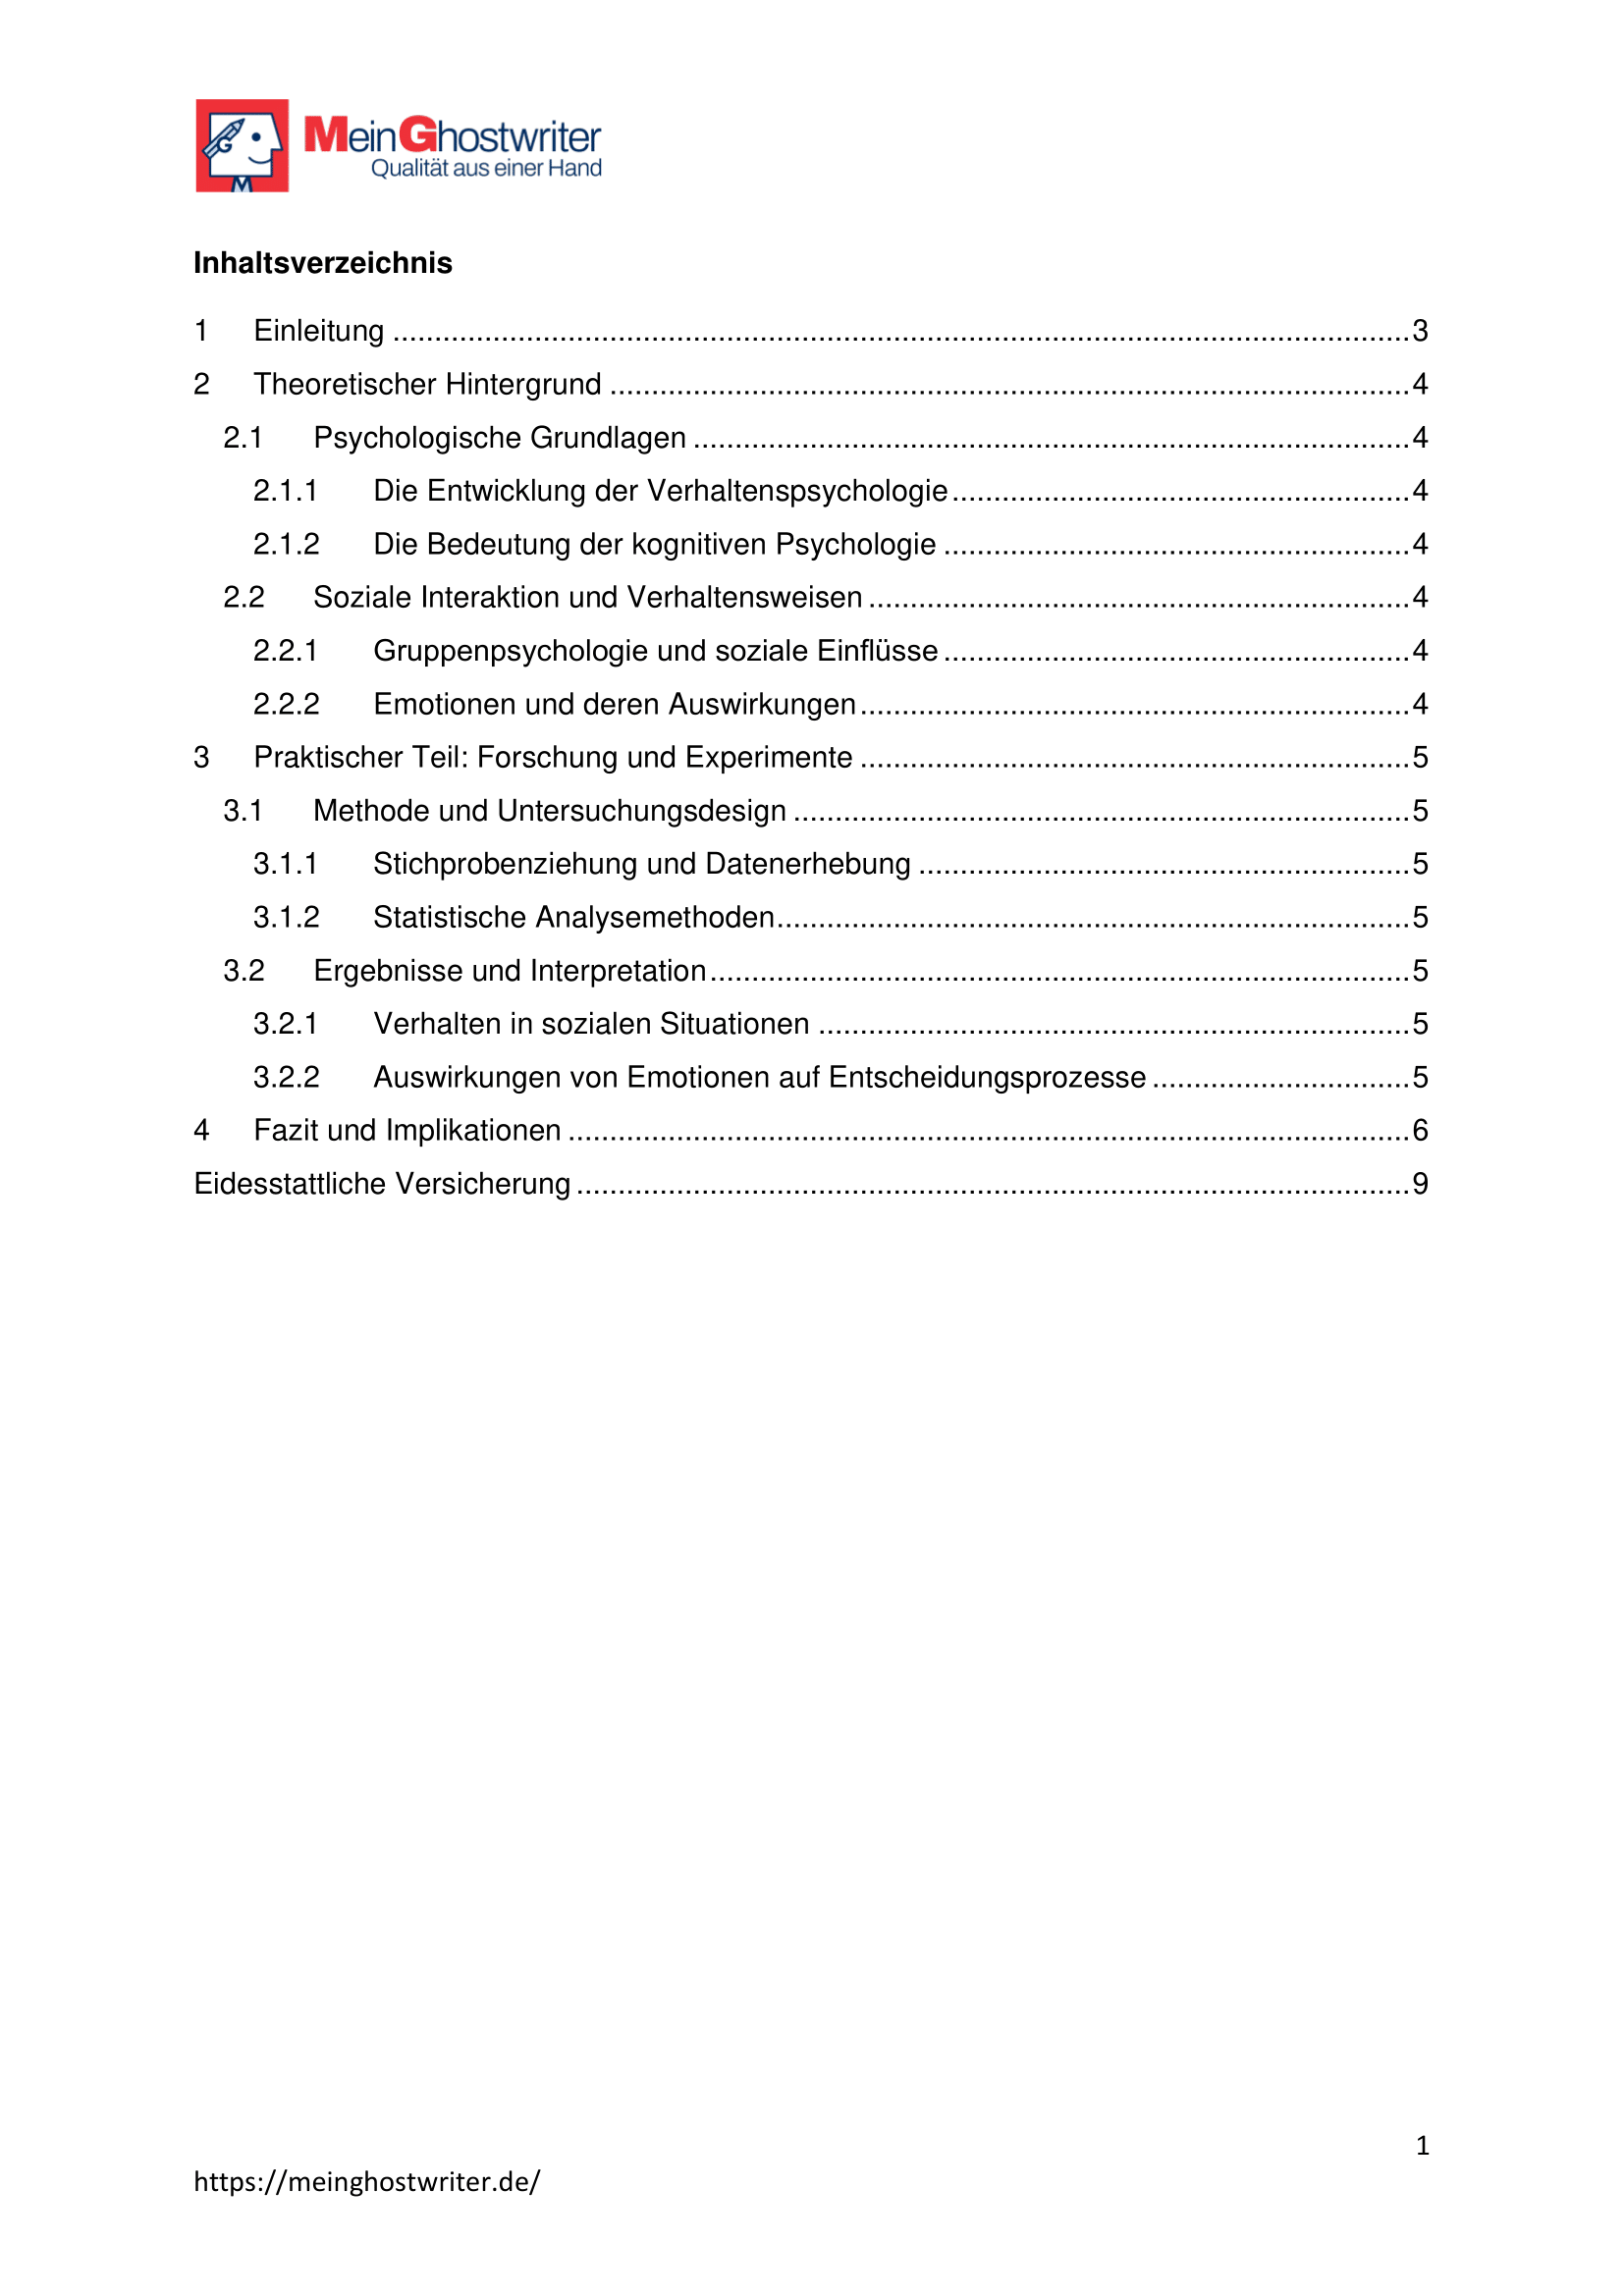 Inhaltsverzeichnis Vorlage 2